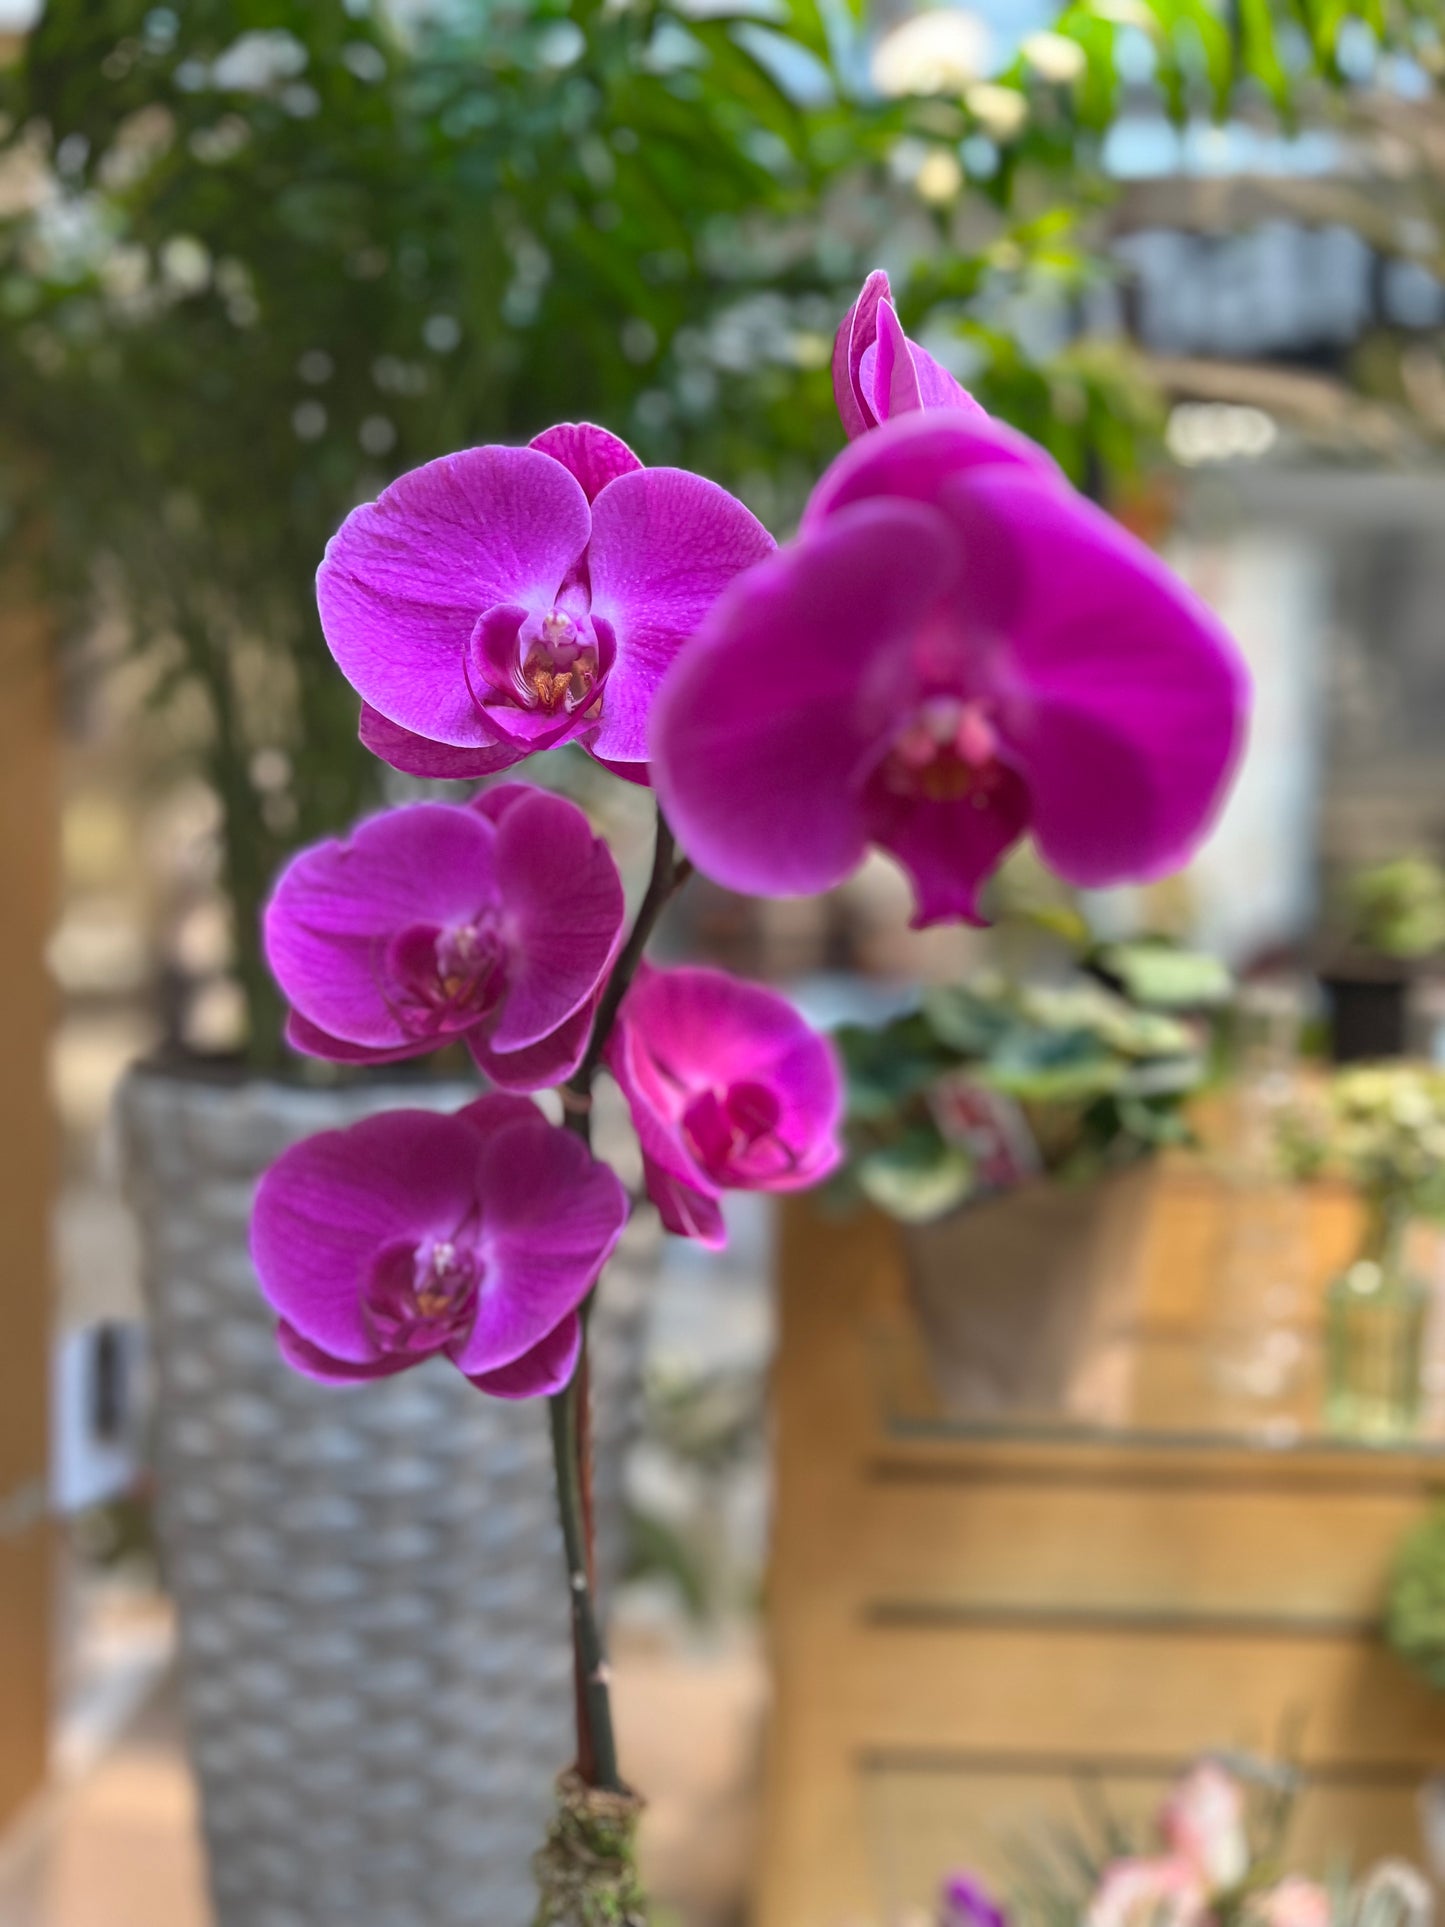 The Orchid arrangement